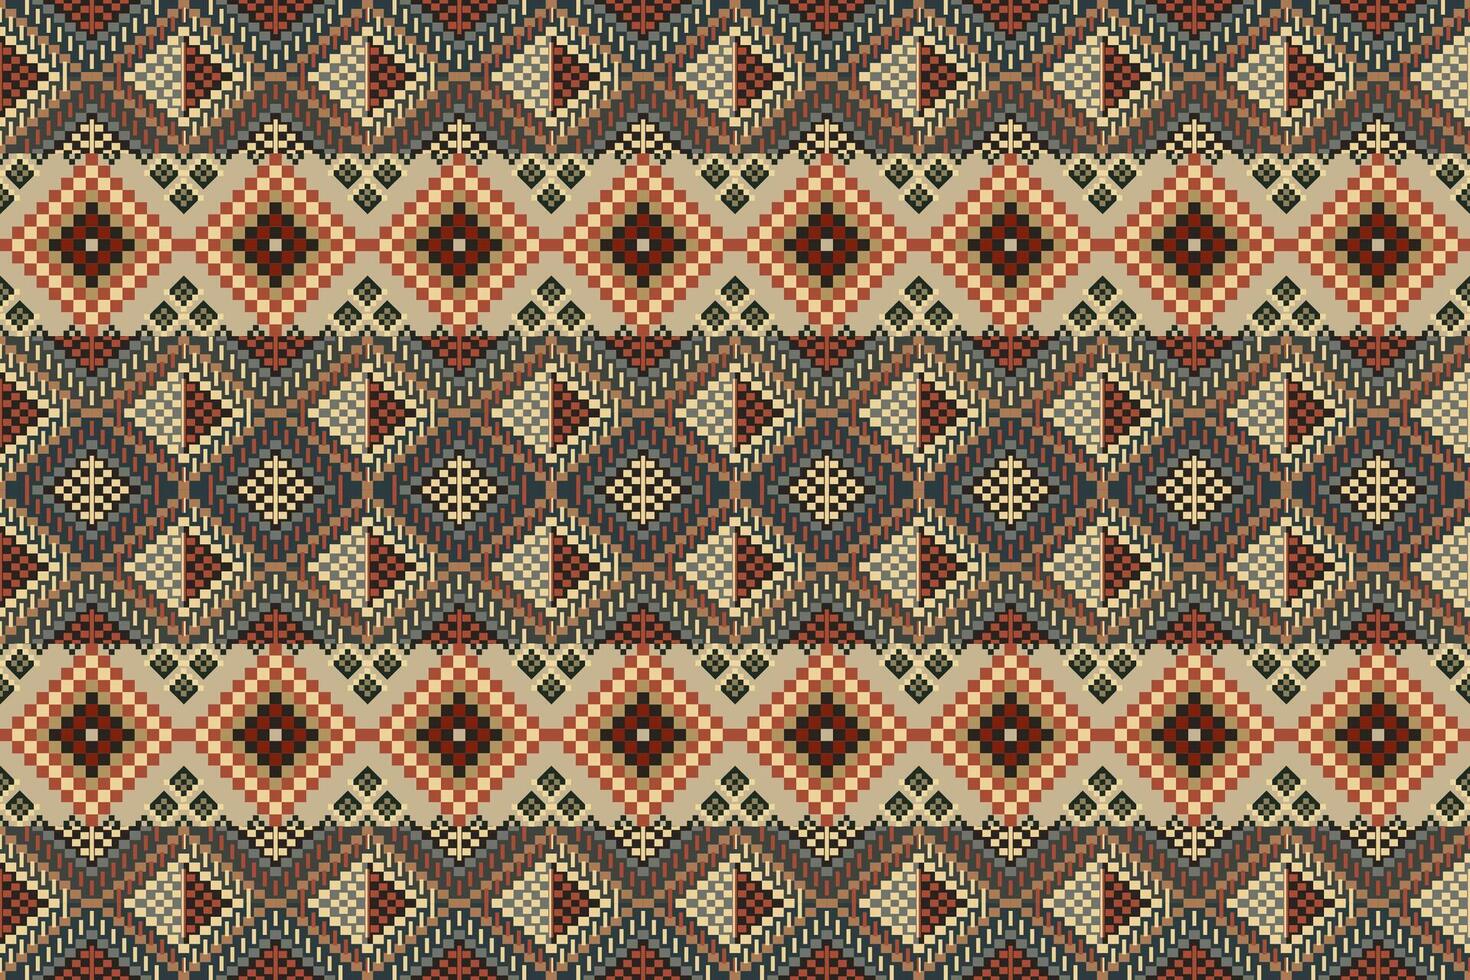 Navajo tribal vector naadloos patroon. inheems Amerikaans ornament. etnisch zuiden western decor stijl. boho meetkundig ornament. pixel naadloos patroon. Mexicaans deken, tapijt. geweven tapijt illustratie.